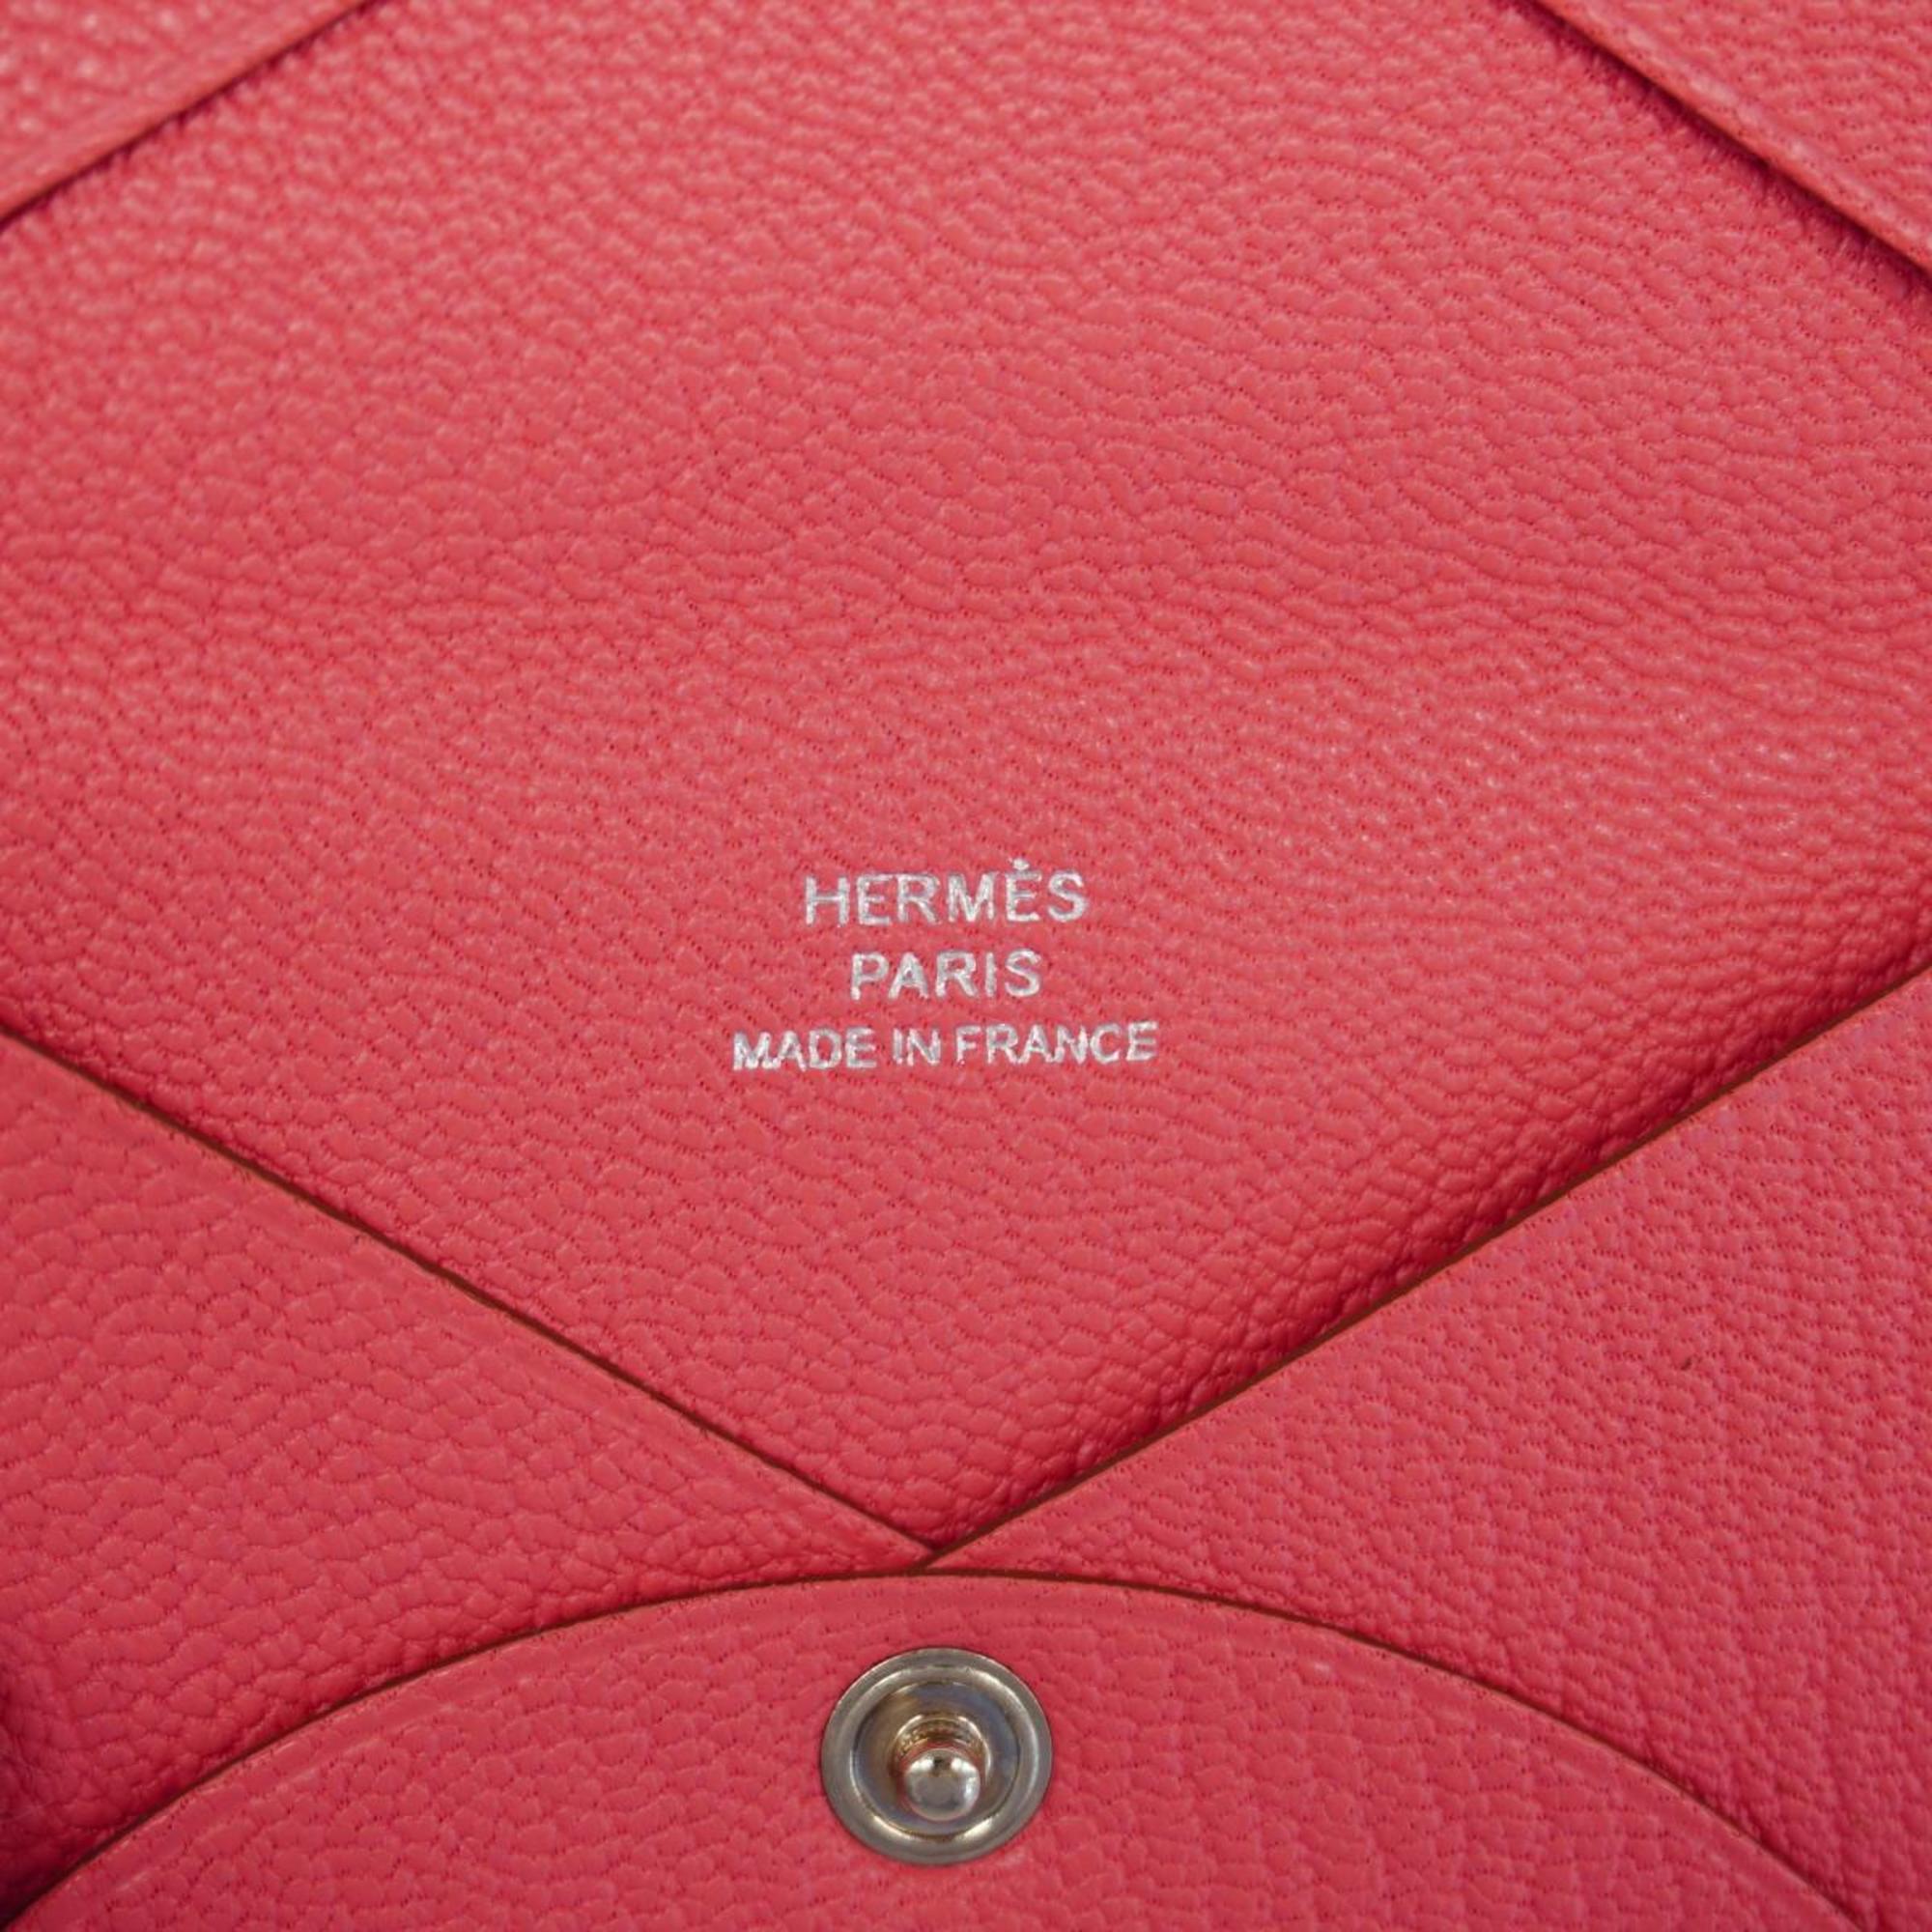 Hermes Business Card Holder/Card Case Calvi □P Engraved Chevre Mysore Rose Tyrian Women's